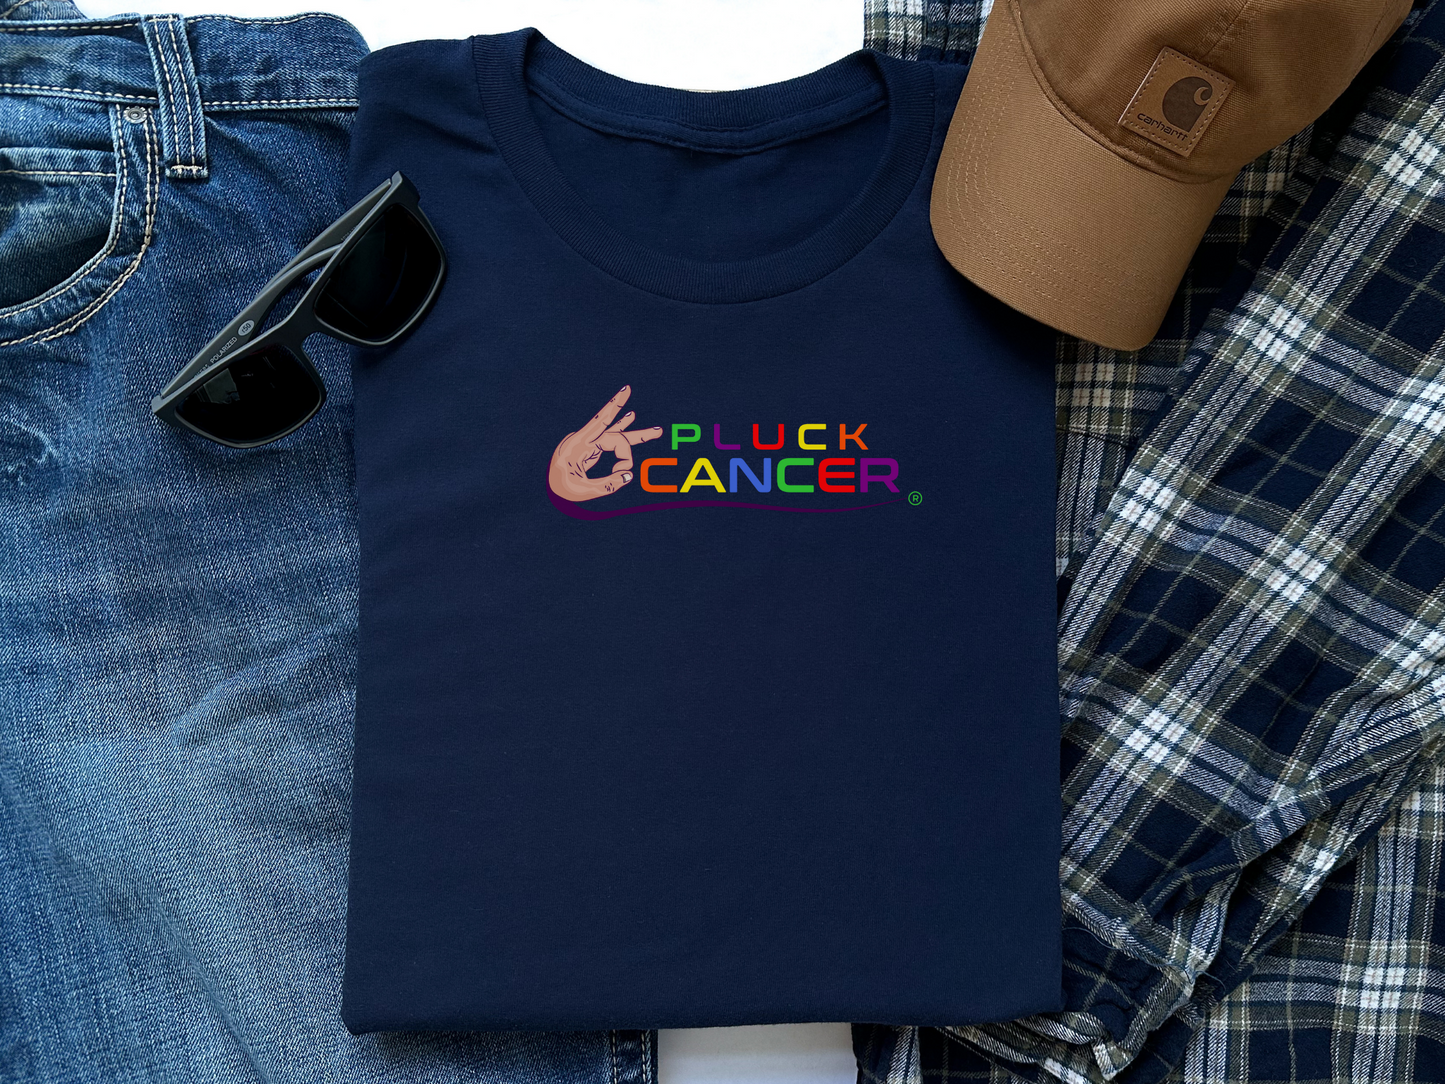 Pluck Cancer Men's Cotton T-Shirt - Navy